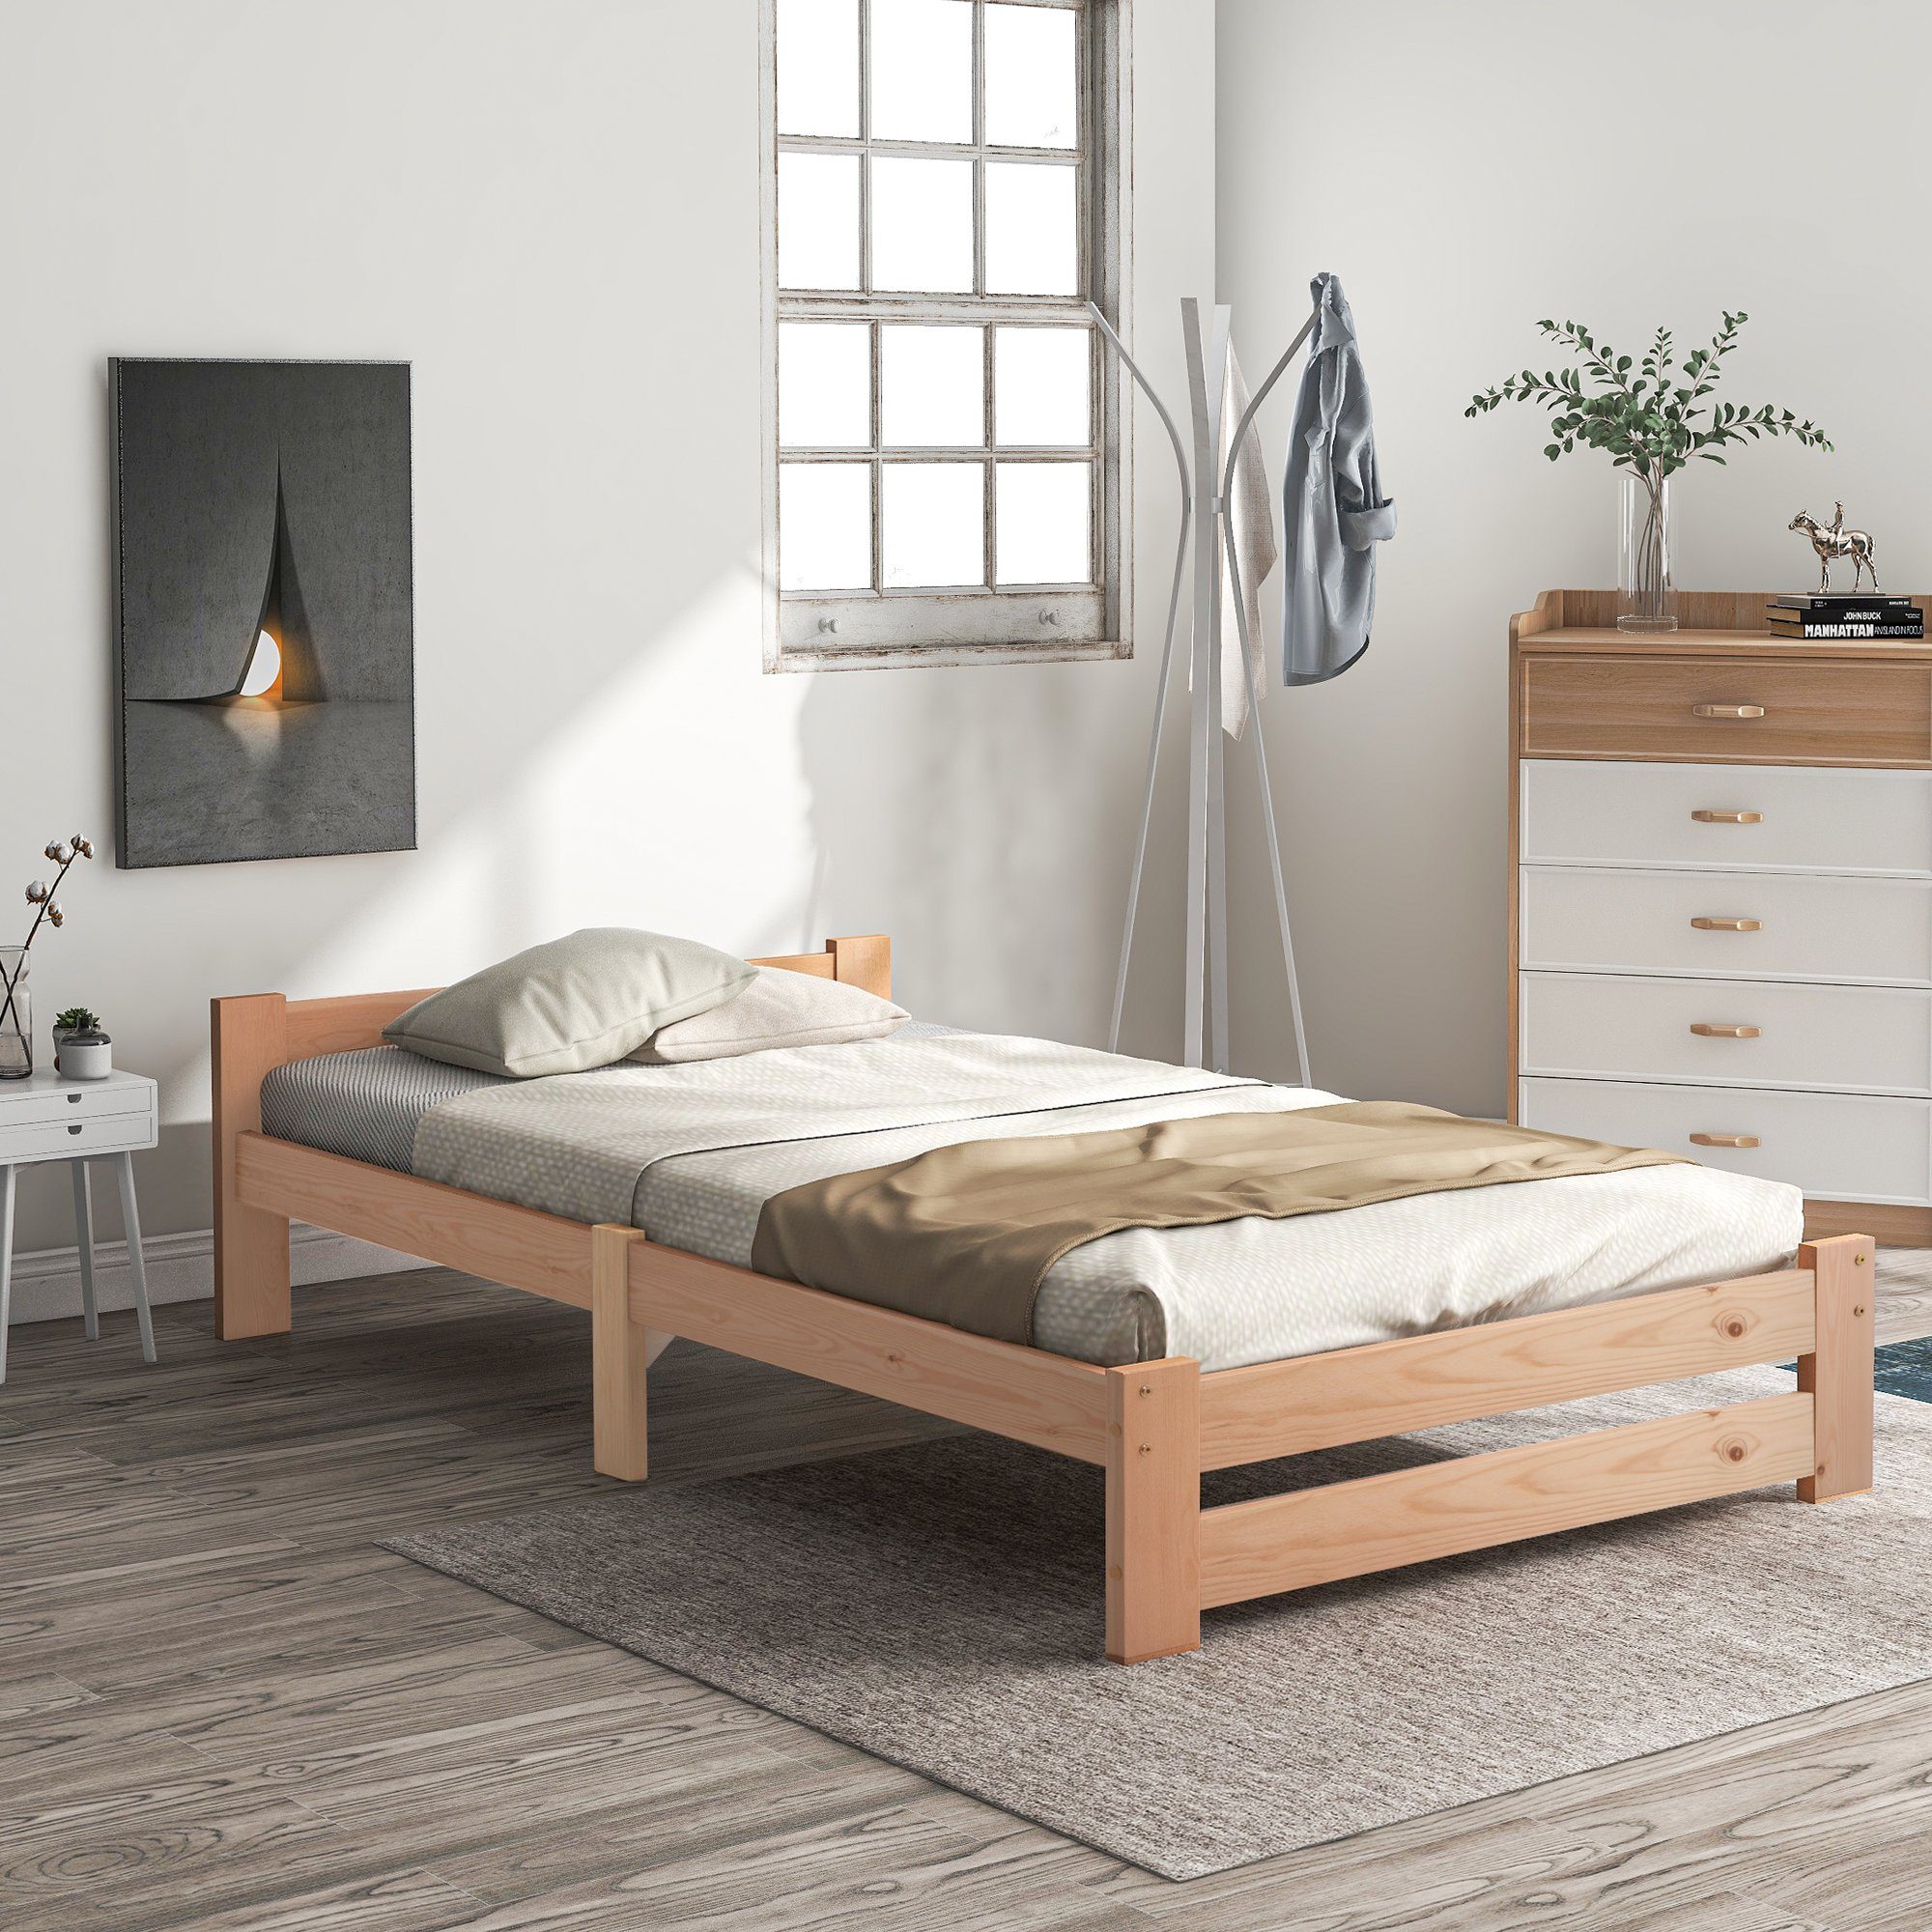 OKWISH Bett Solide Massivholzbett, mit Kopfteil und Lattenrost (200x90cm, Mit Matratzen), Ohne Matratze